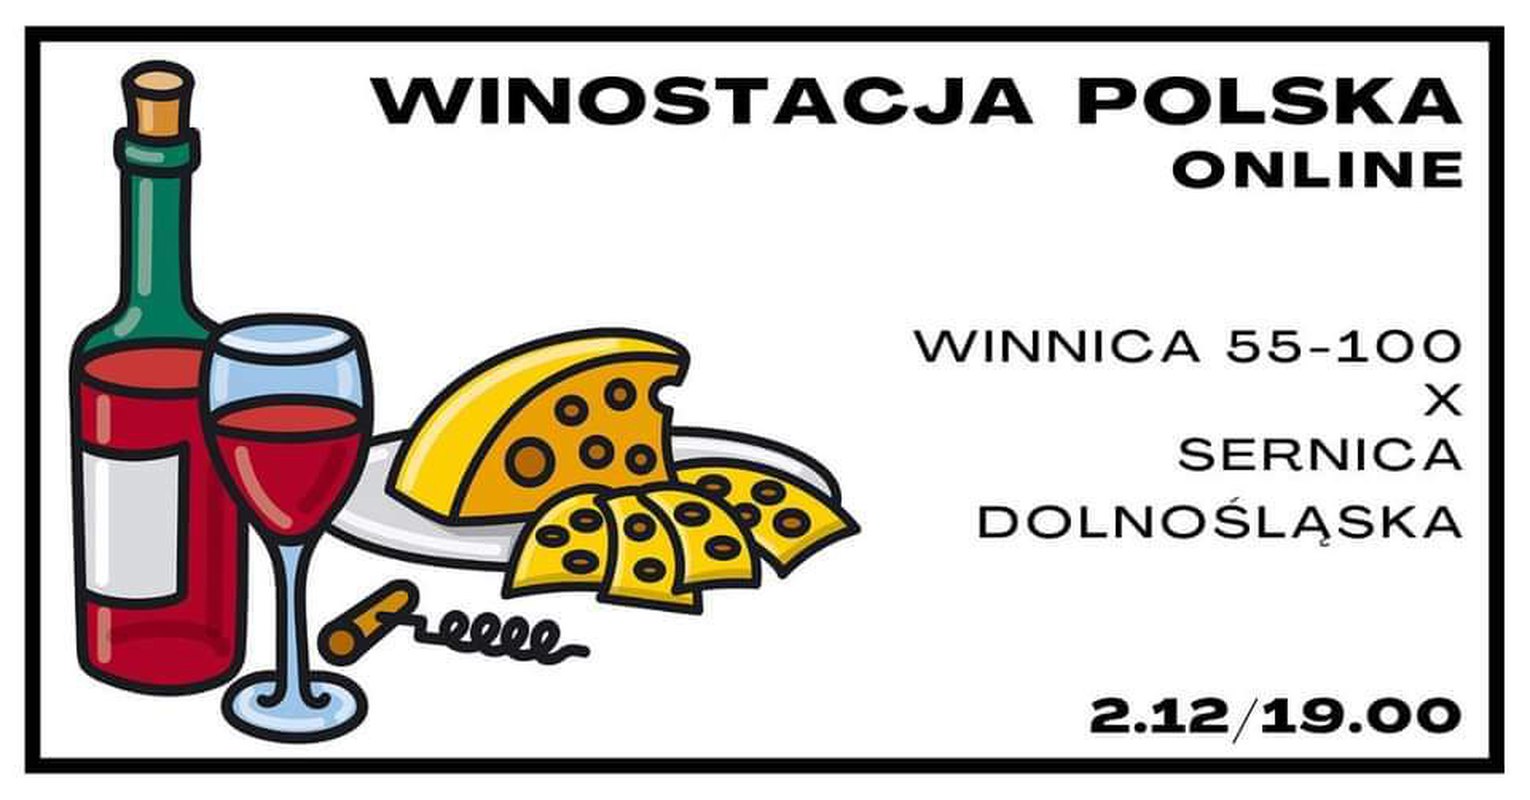 Winostacja Polska. Winnica 55-100 x Sernica Dolnośląska